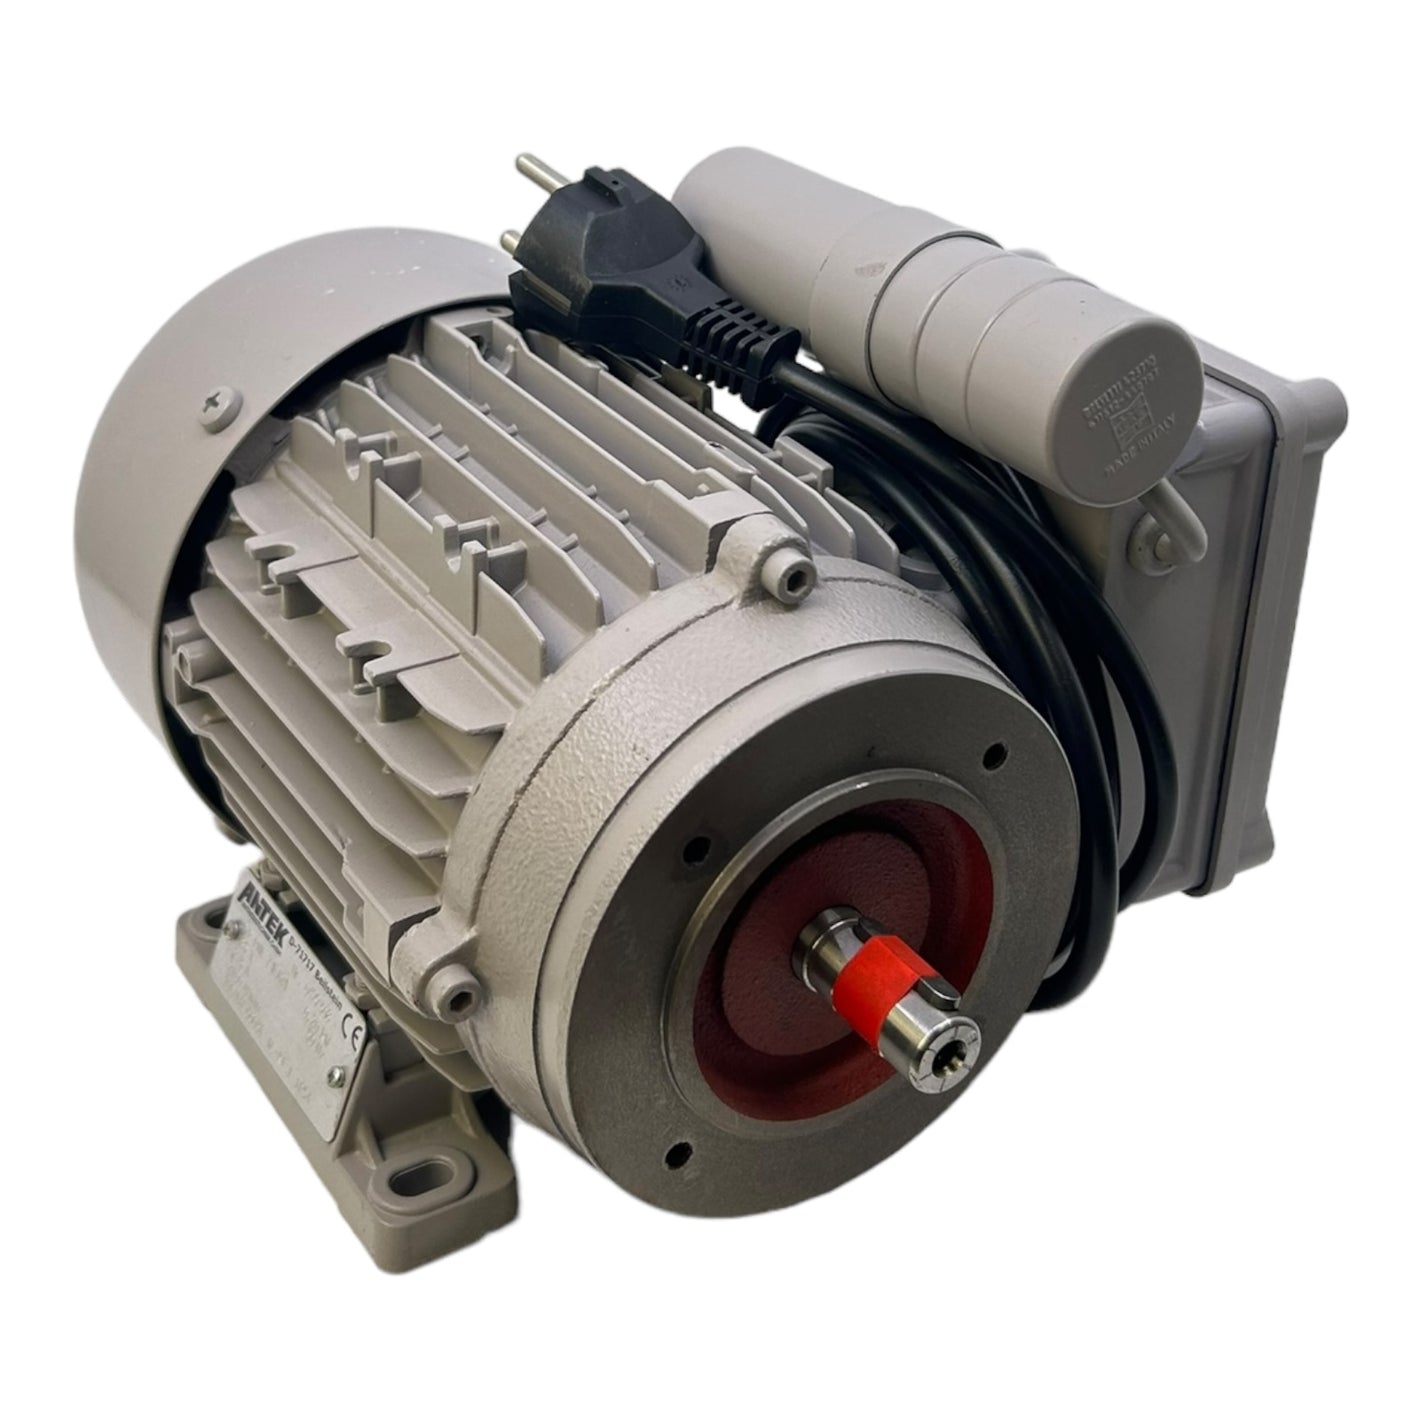 Antek RME71EA21 electric motor 0.20kW 50Hz 185V 2.3A IP54 motor 